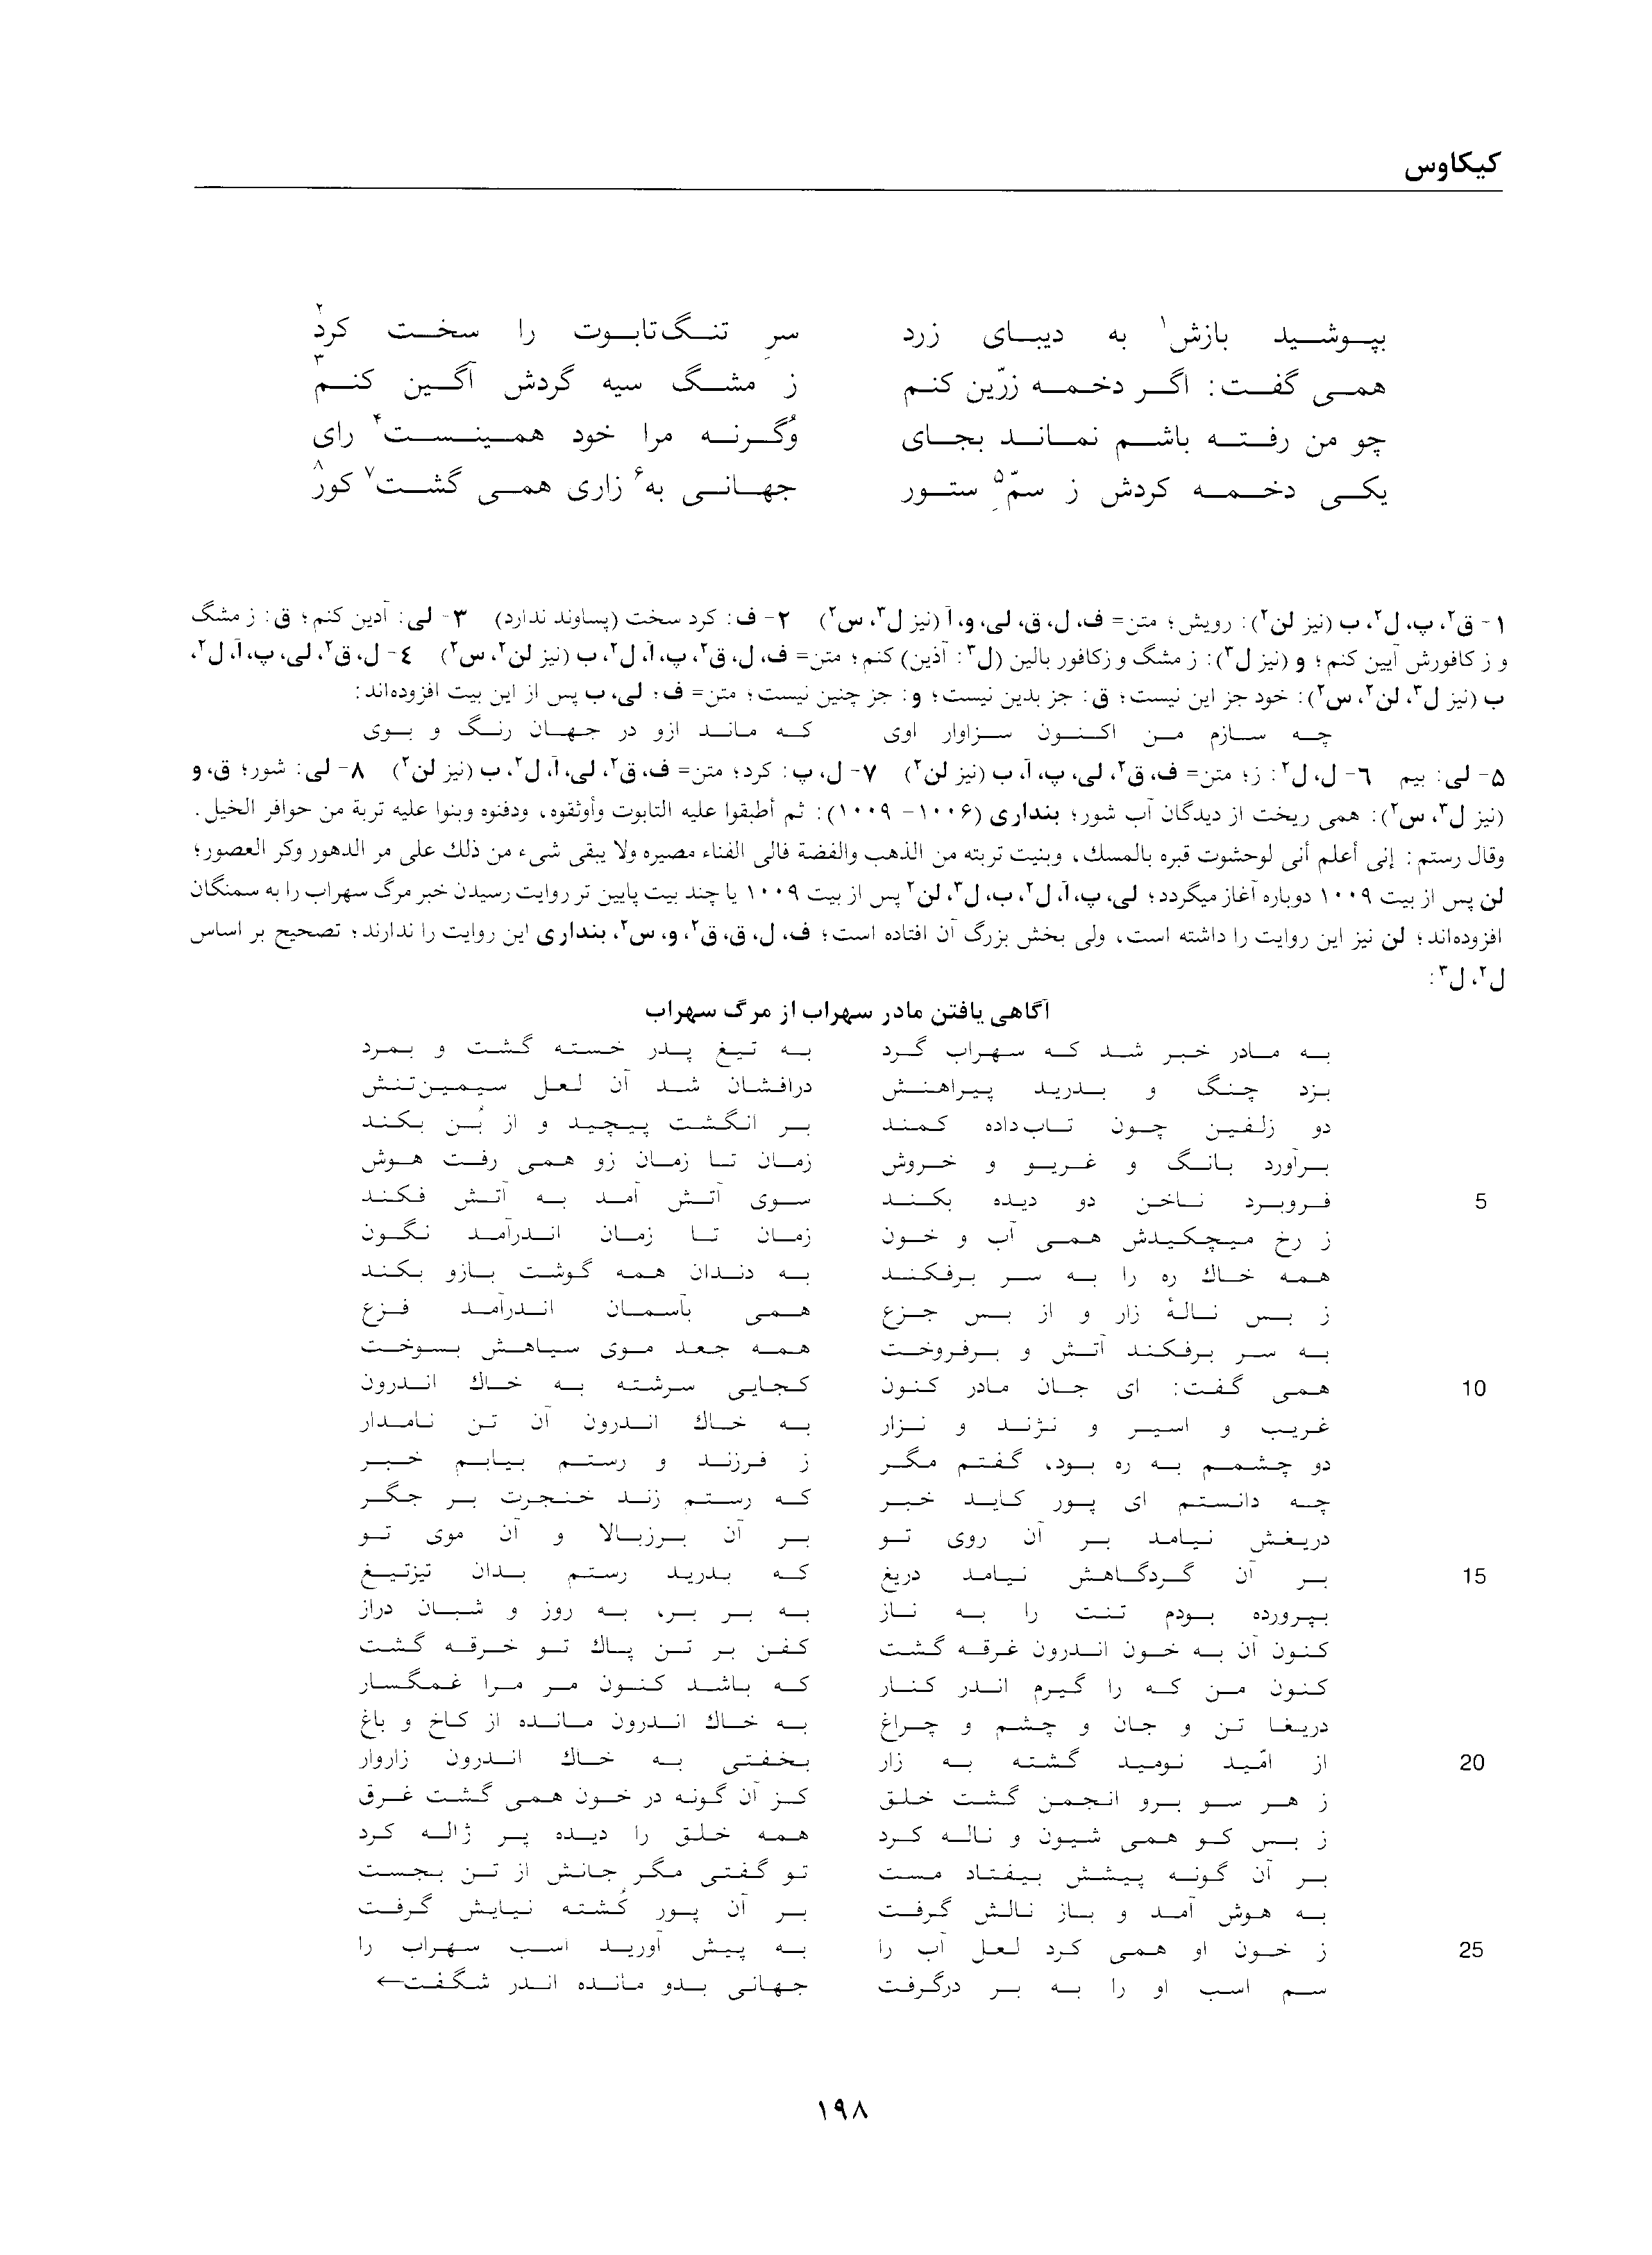 vol. 2, p. 198